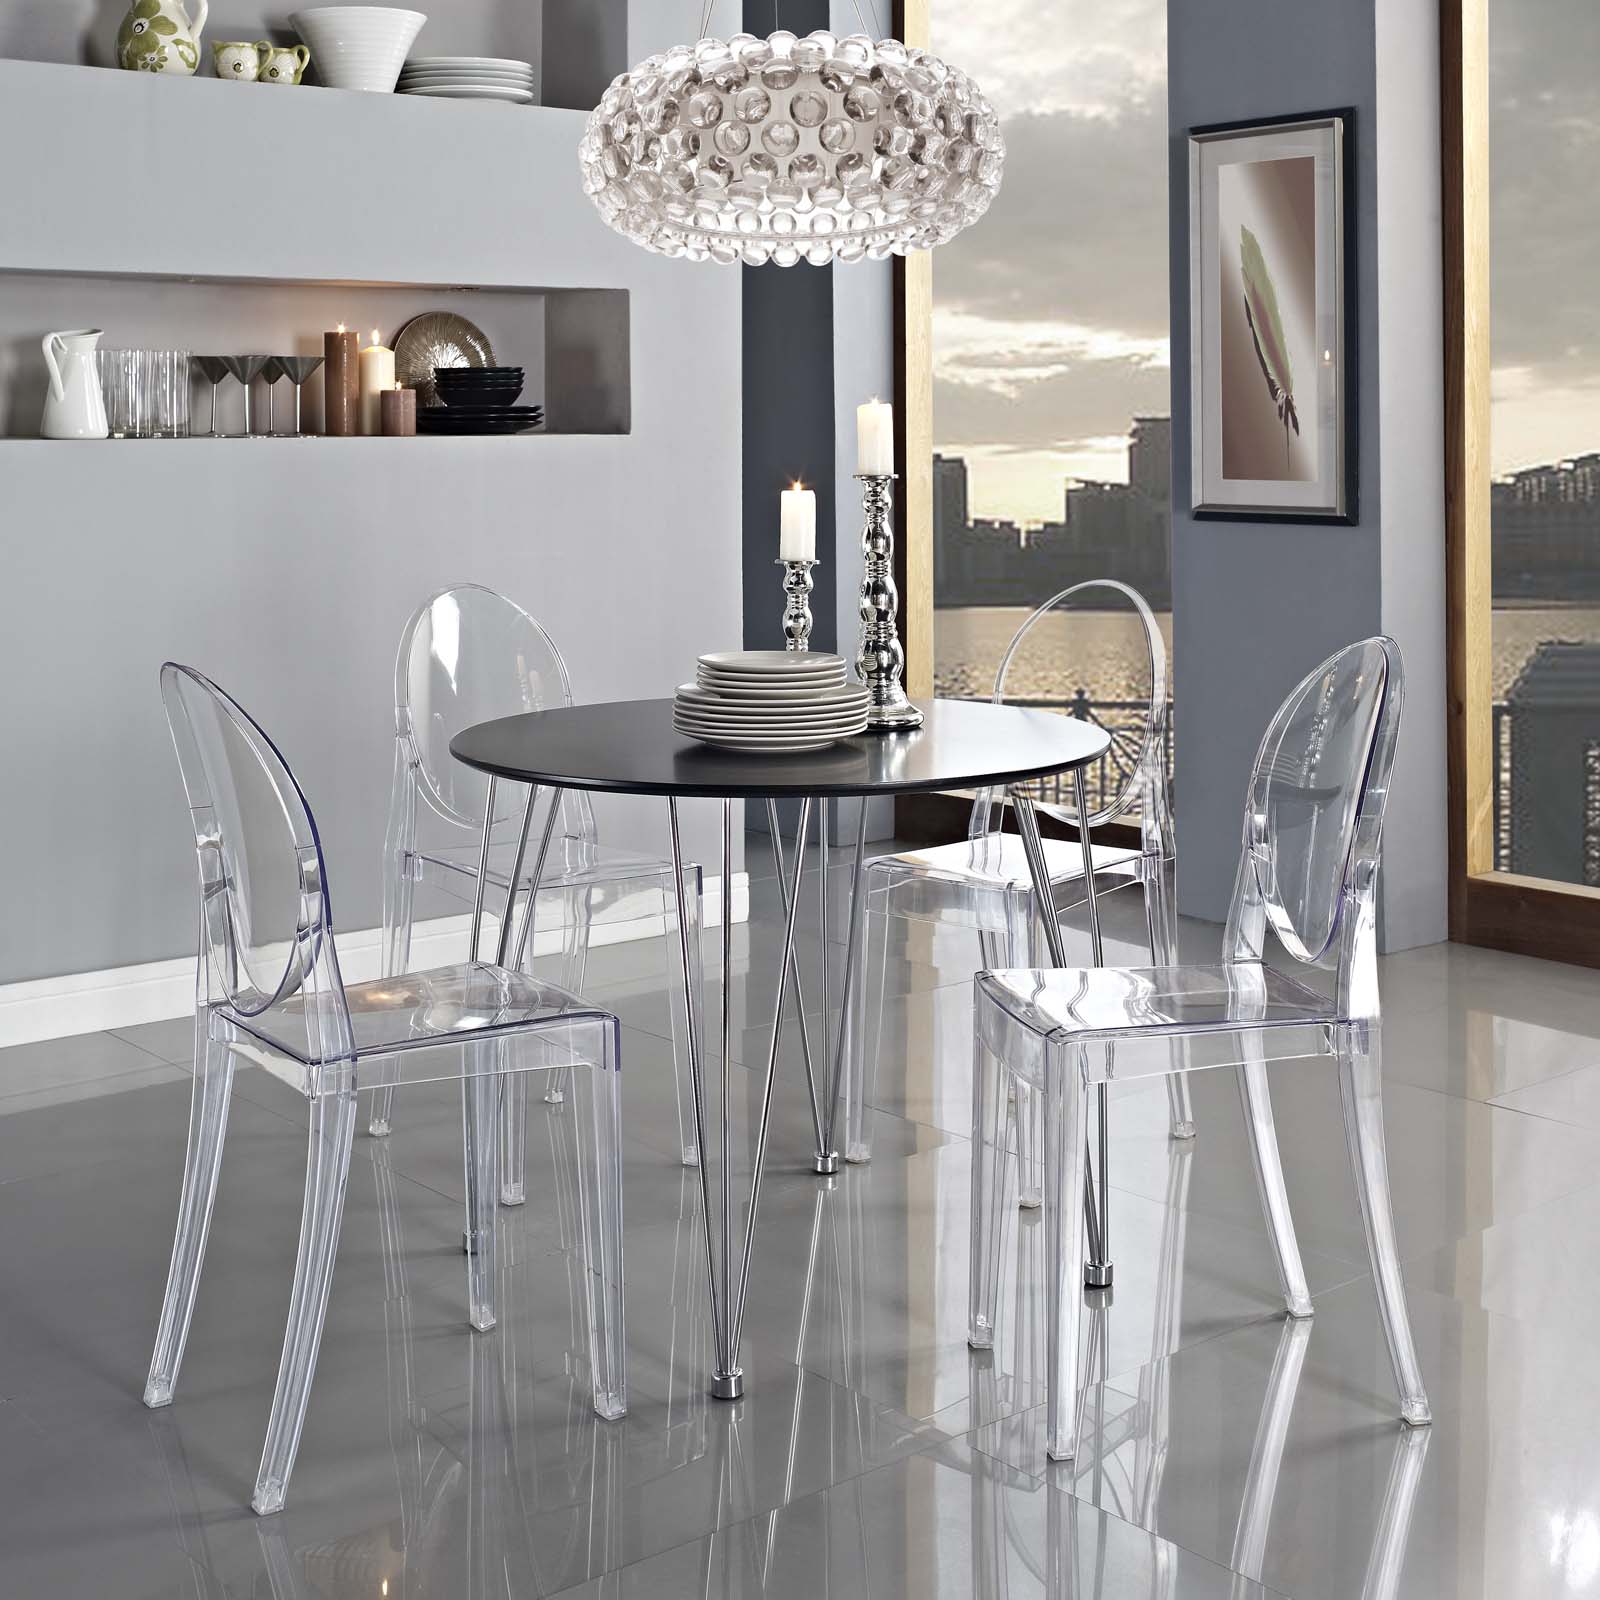 Casper Dining Side Chair - East Shore Modern Home Furnishings